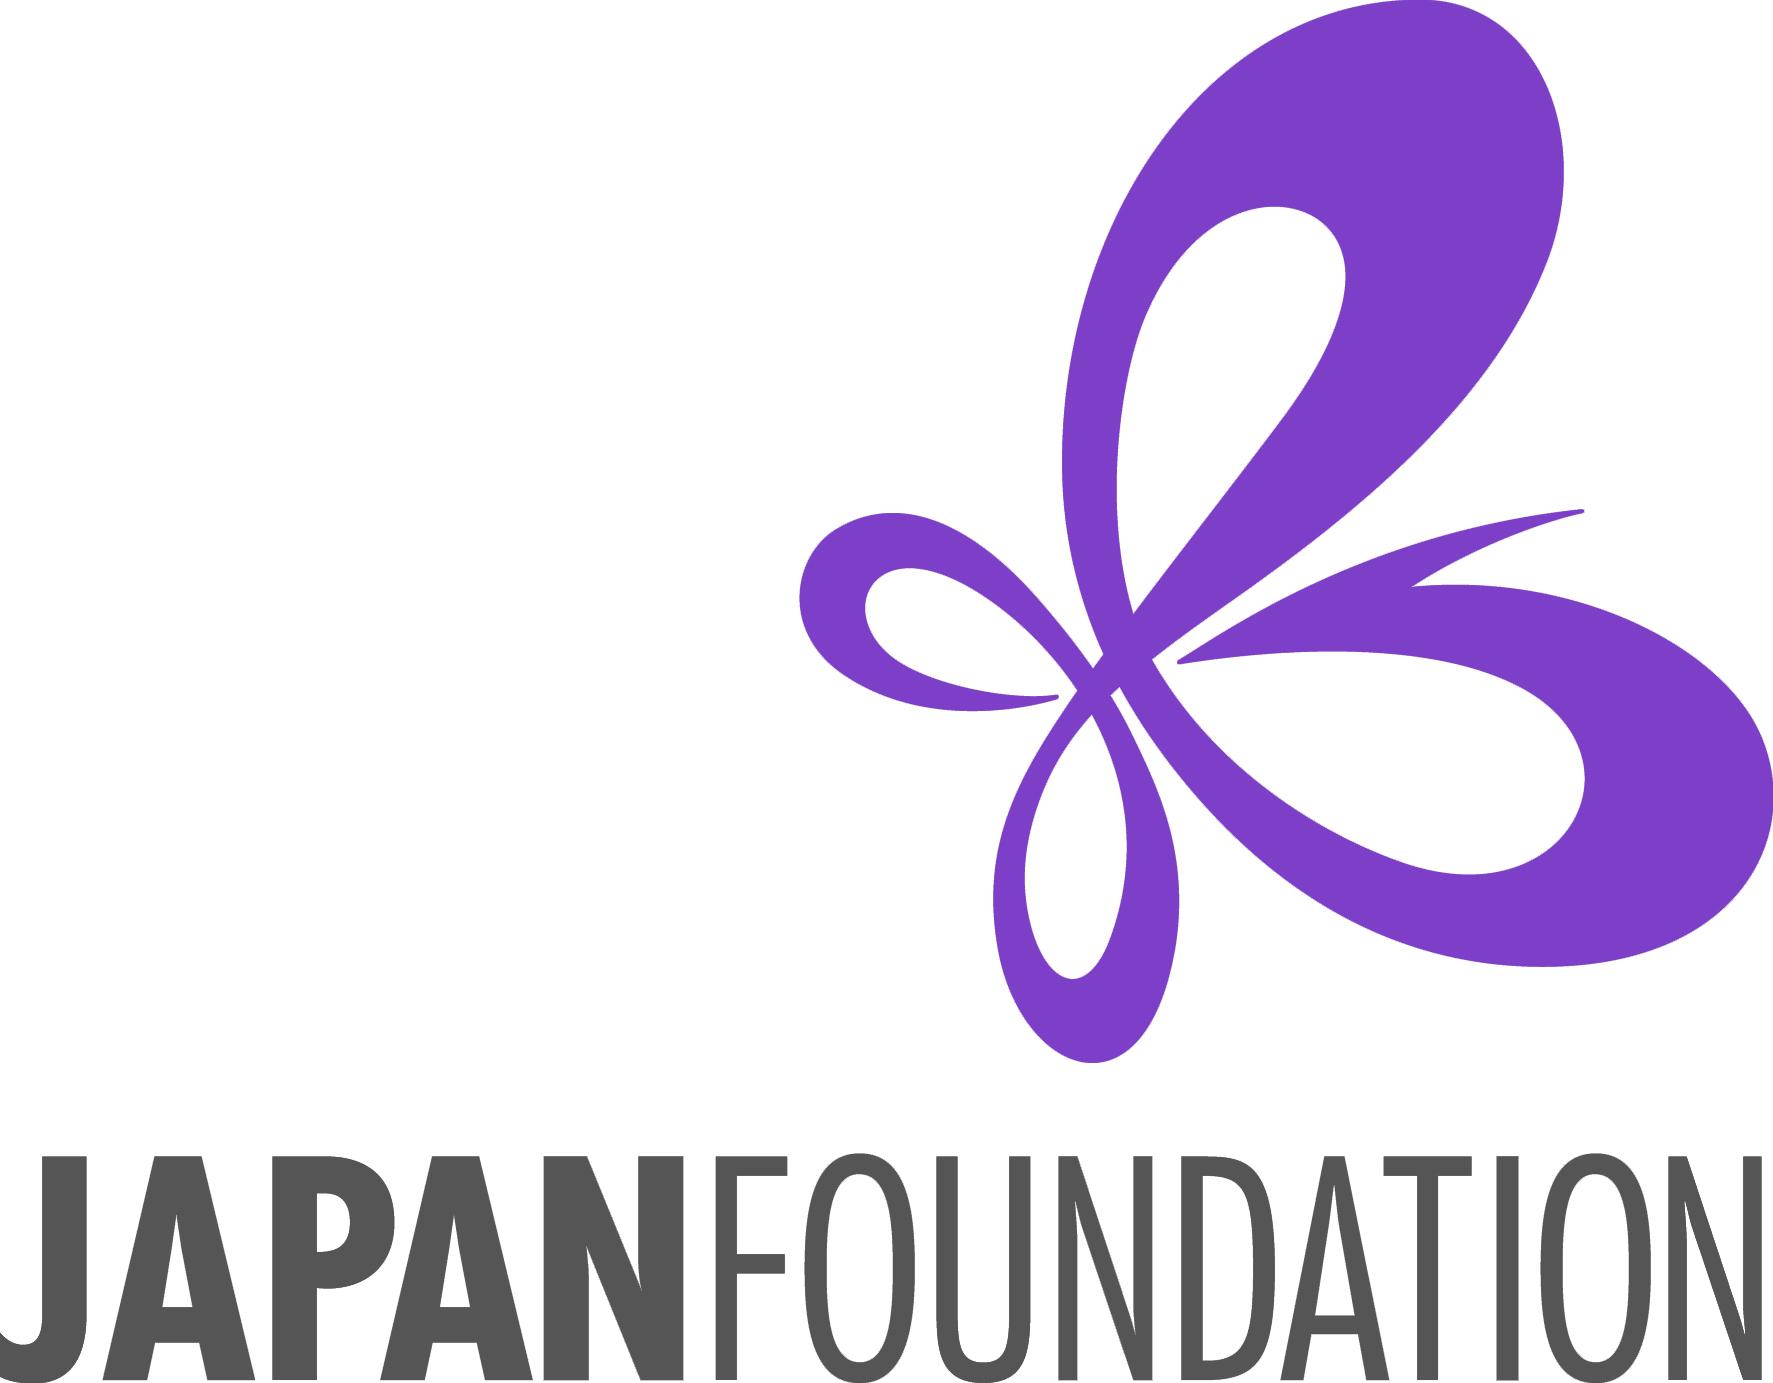 Japanese MP Logo - Kotatsu Japanese Animation Festival. Bringing you the best